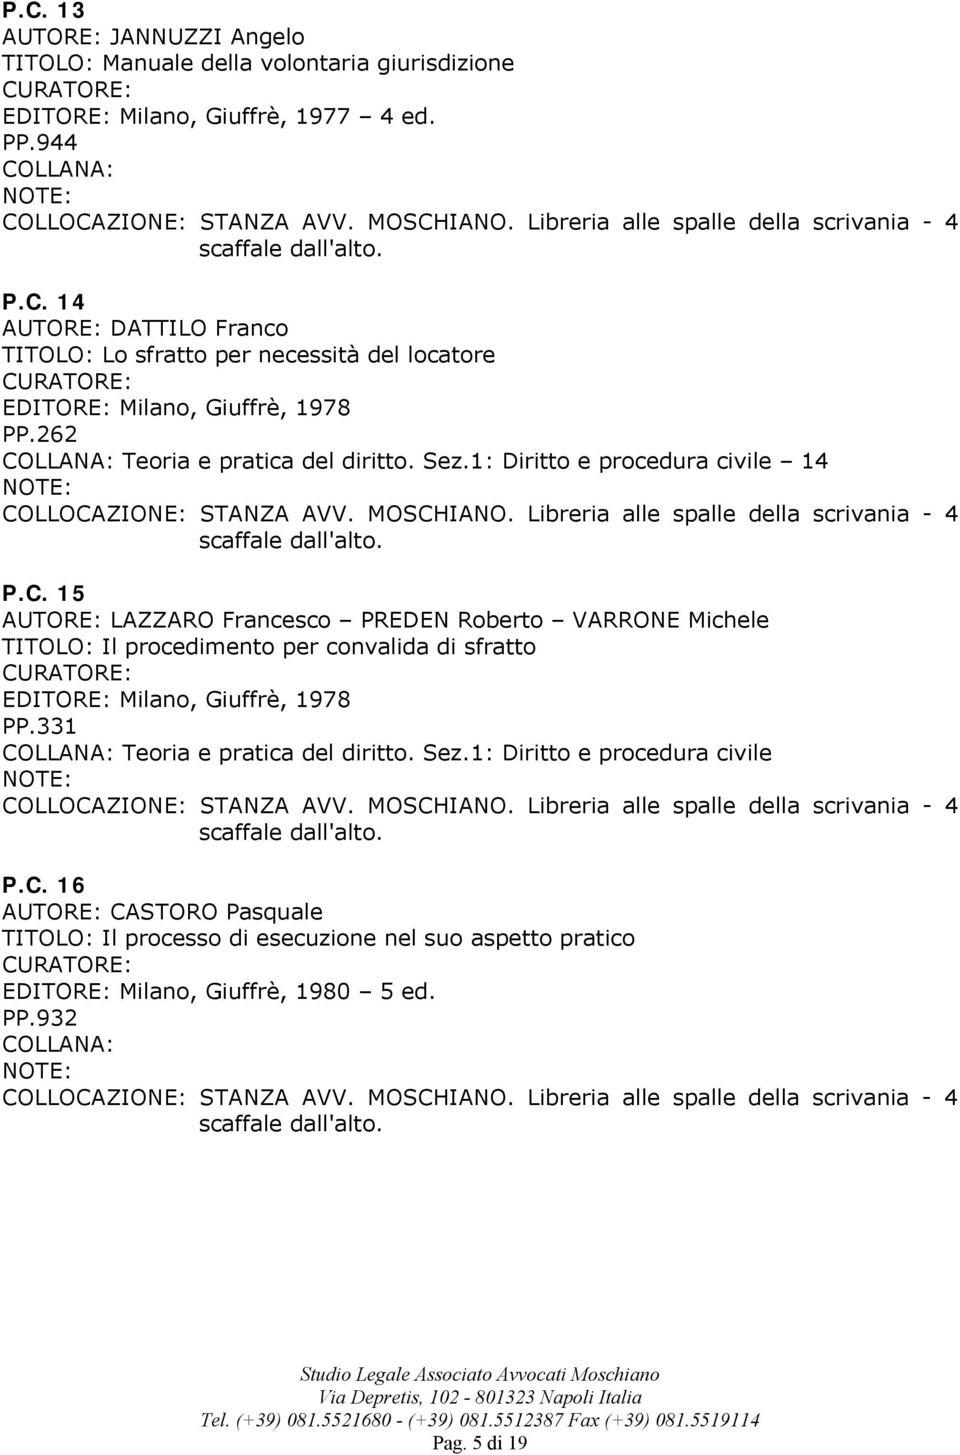 15 LAZZARO Francesco PREDEN Roberto VARRONE Michele TITOLO: Il procedimento per convalida di sfratto EDITORE: Milano, Giuffrè, 1978 PP.